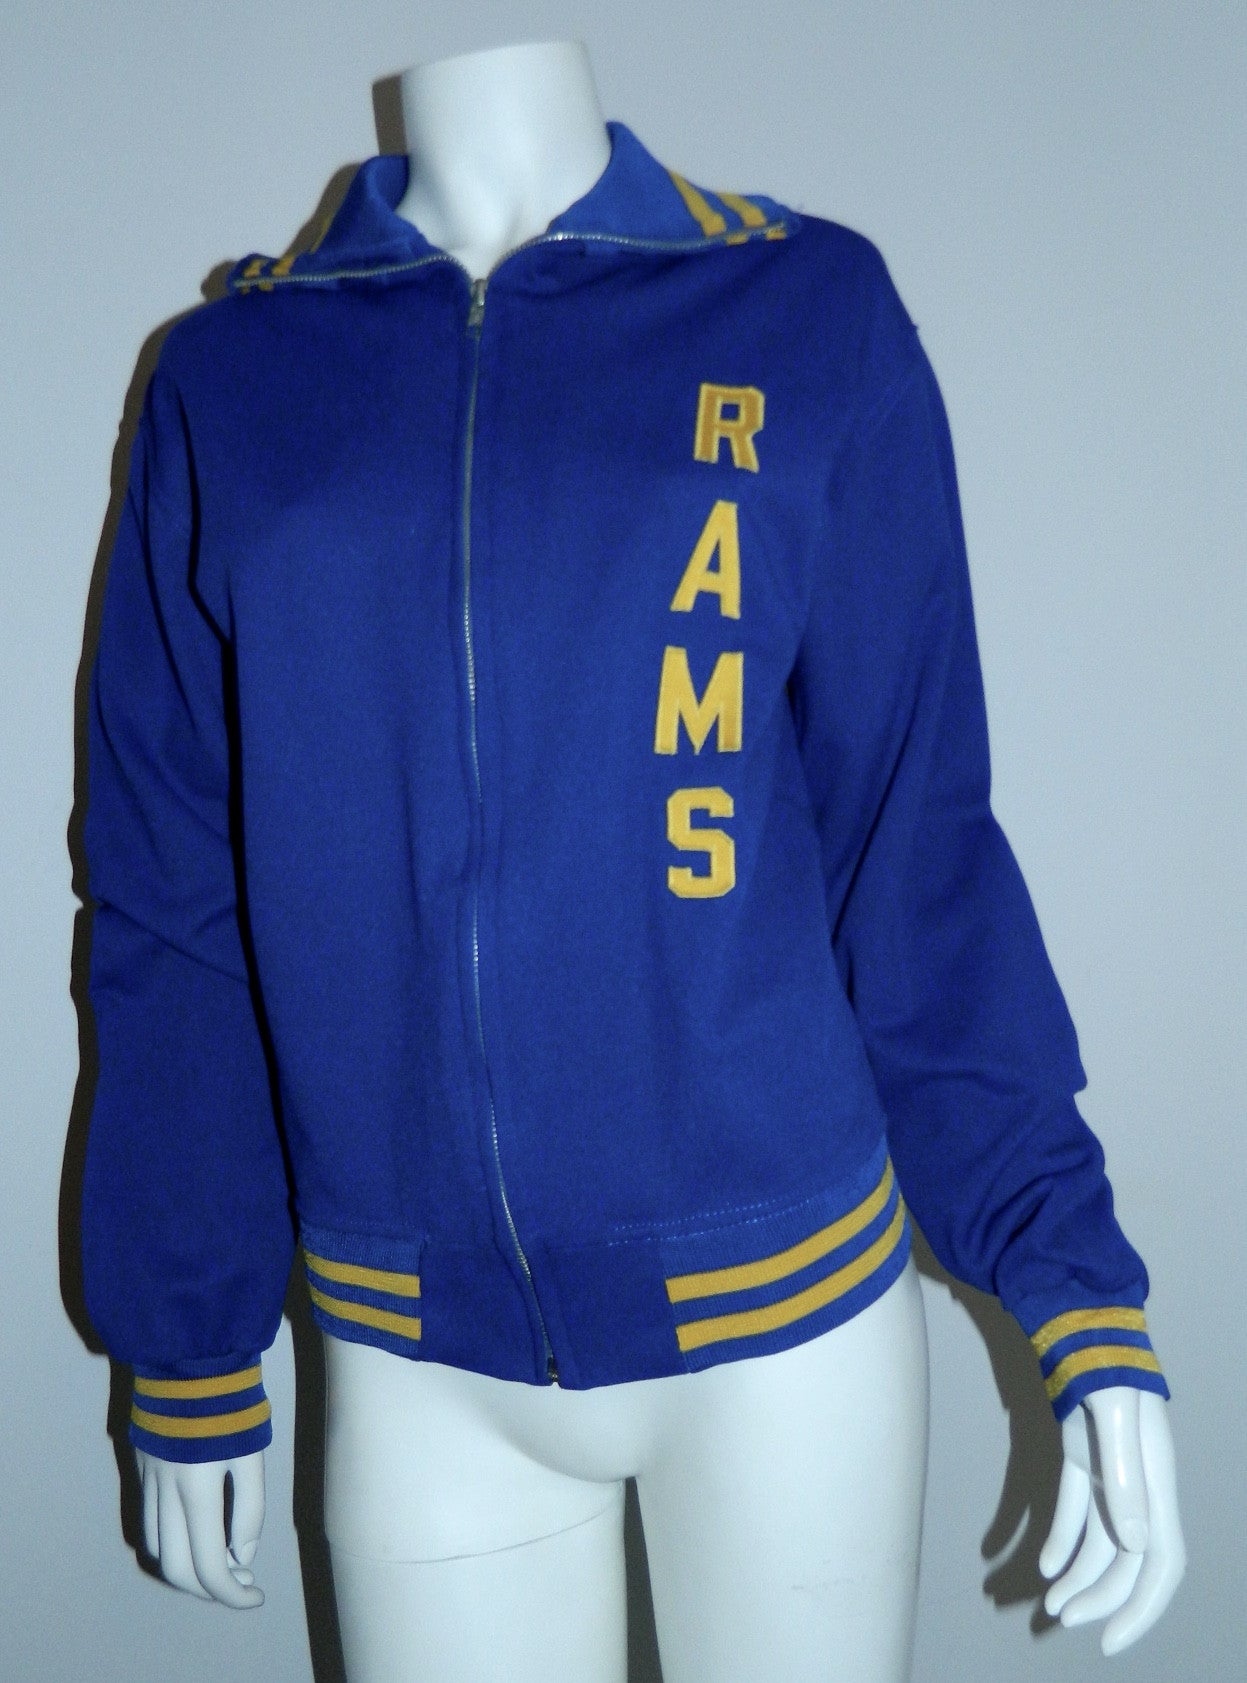 vintage varsity jacket 1970s Robinson Rams Wrestling track warm up jacket Rawlings size 36